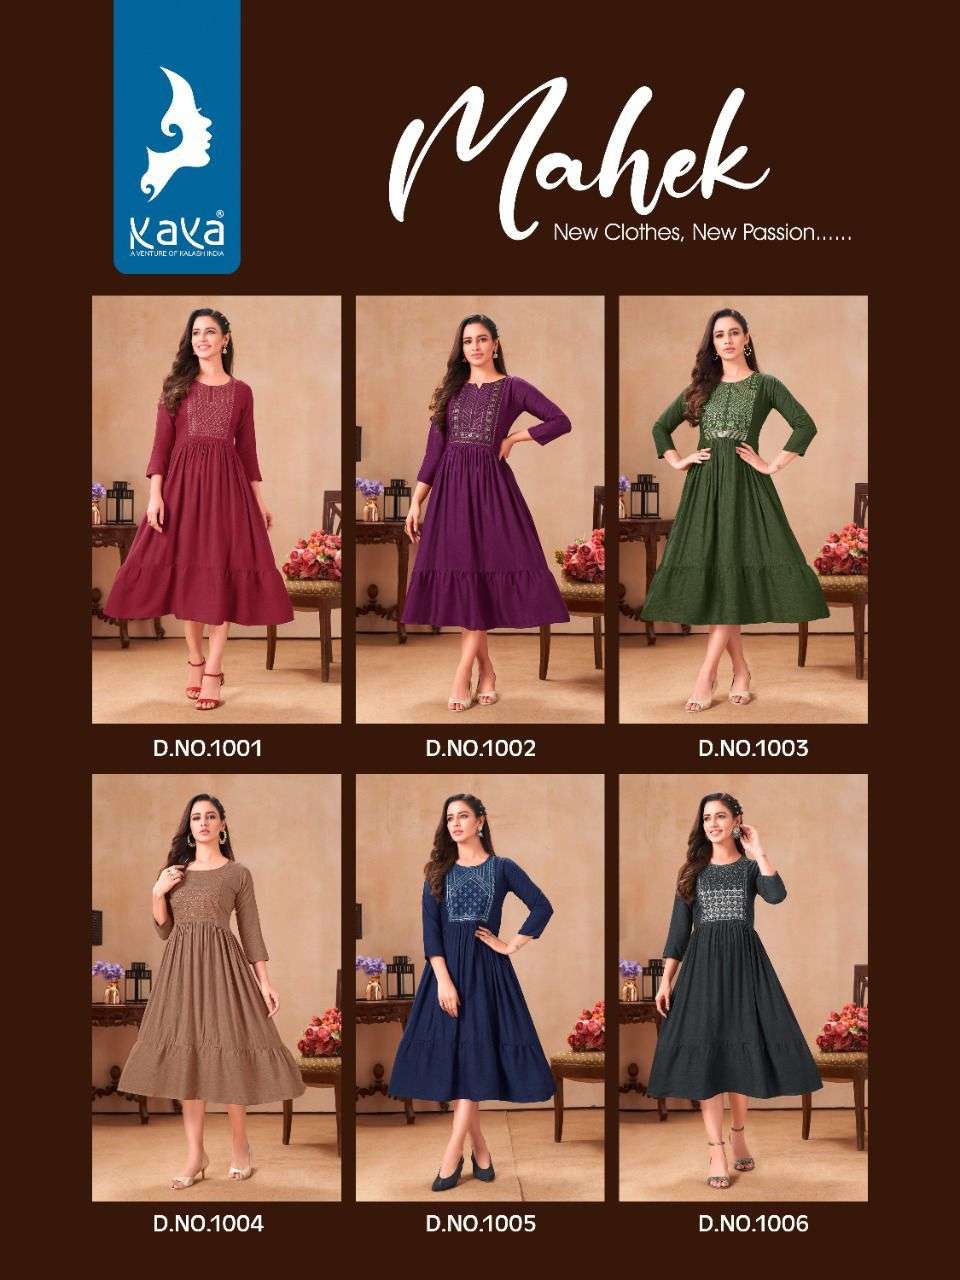 kaya mahek rayon fancy designer kurtis wholesale price supplier surat